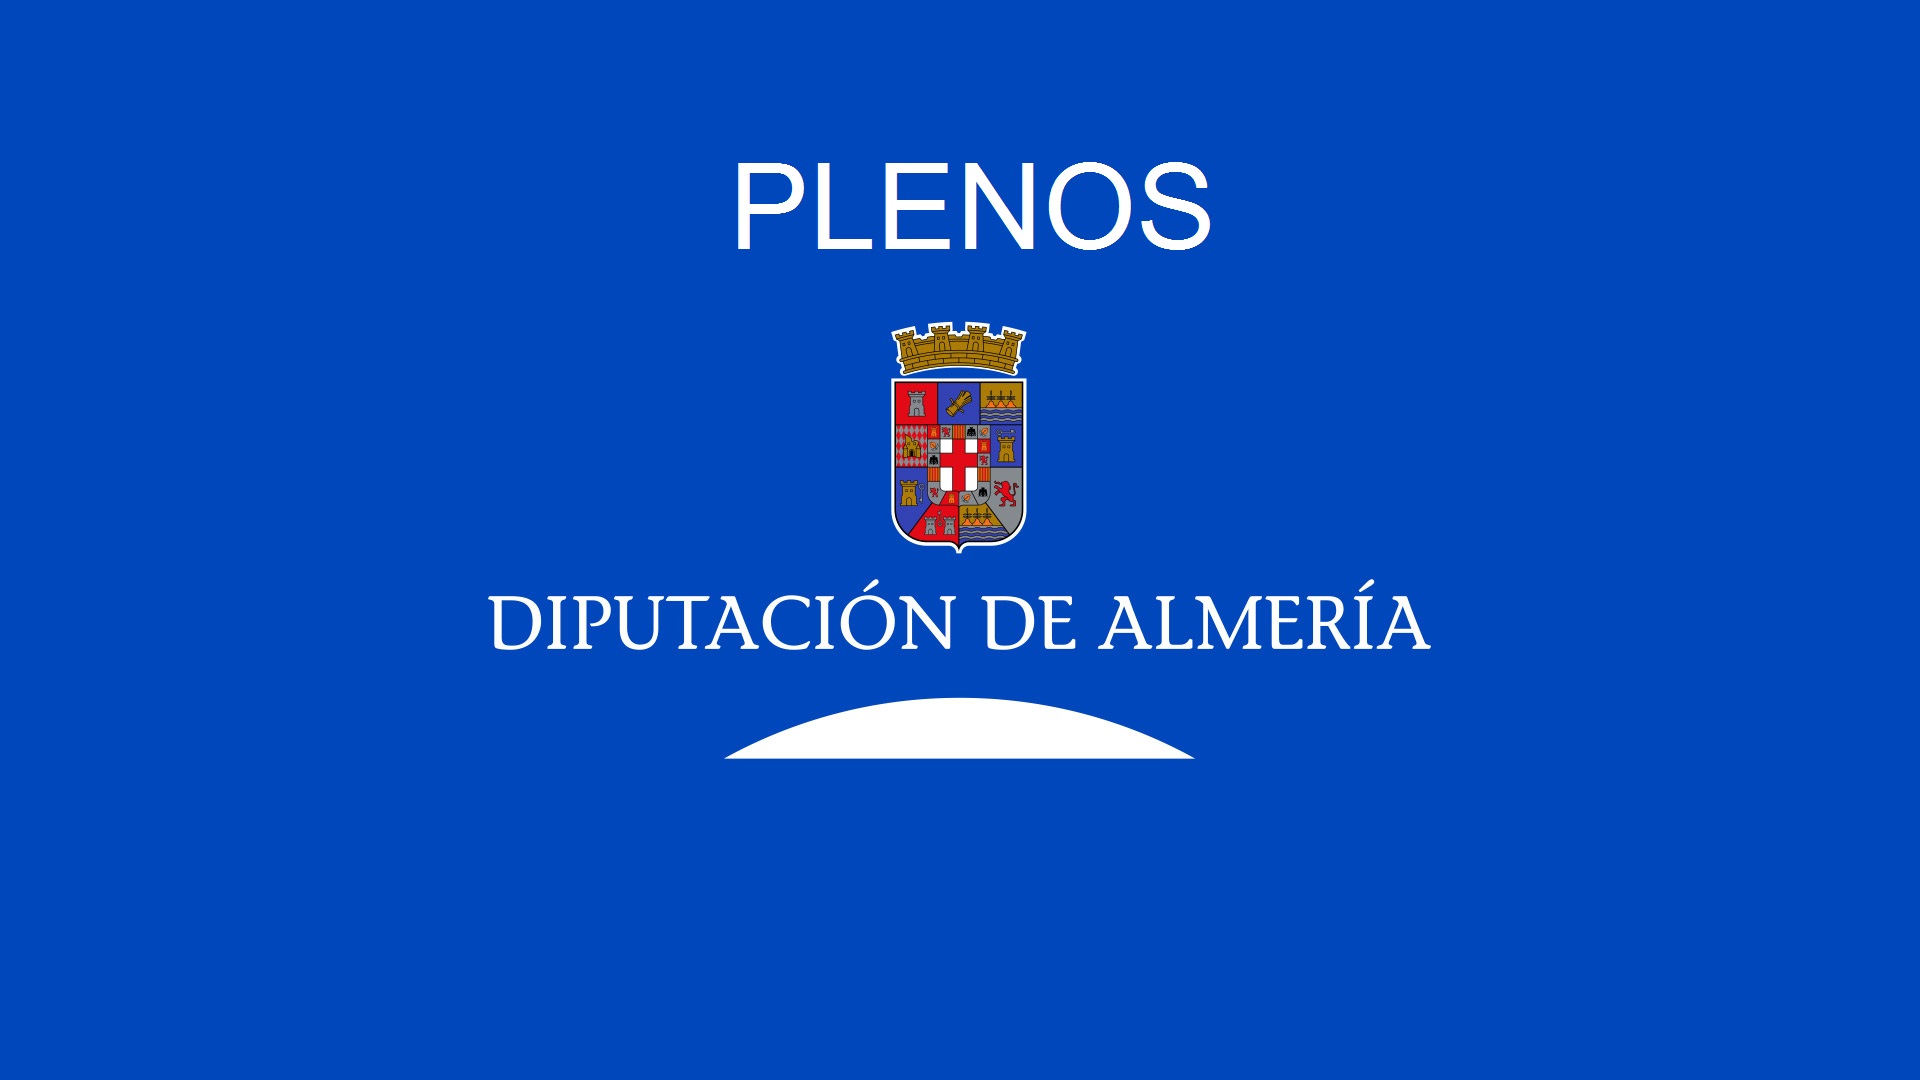 Diputacion de Almeria Live2